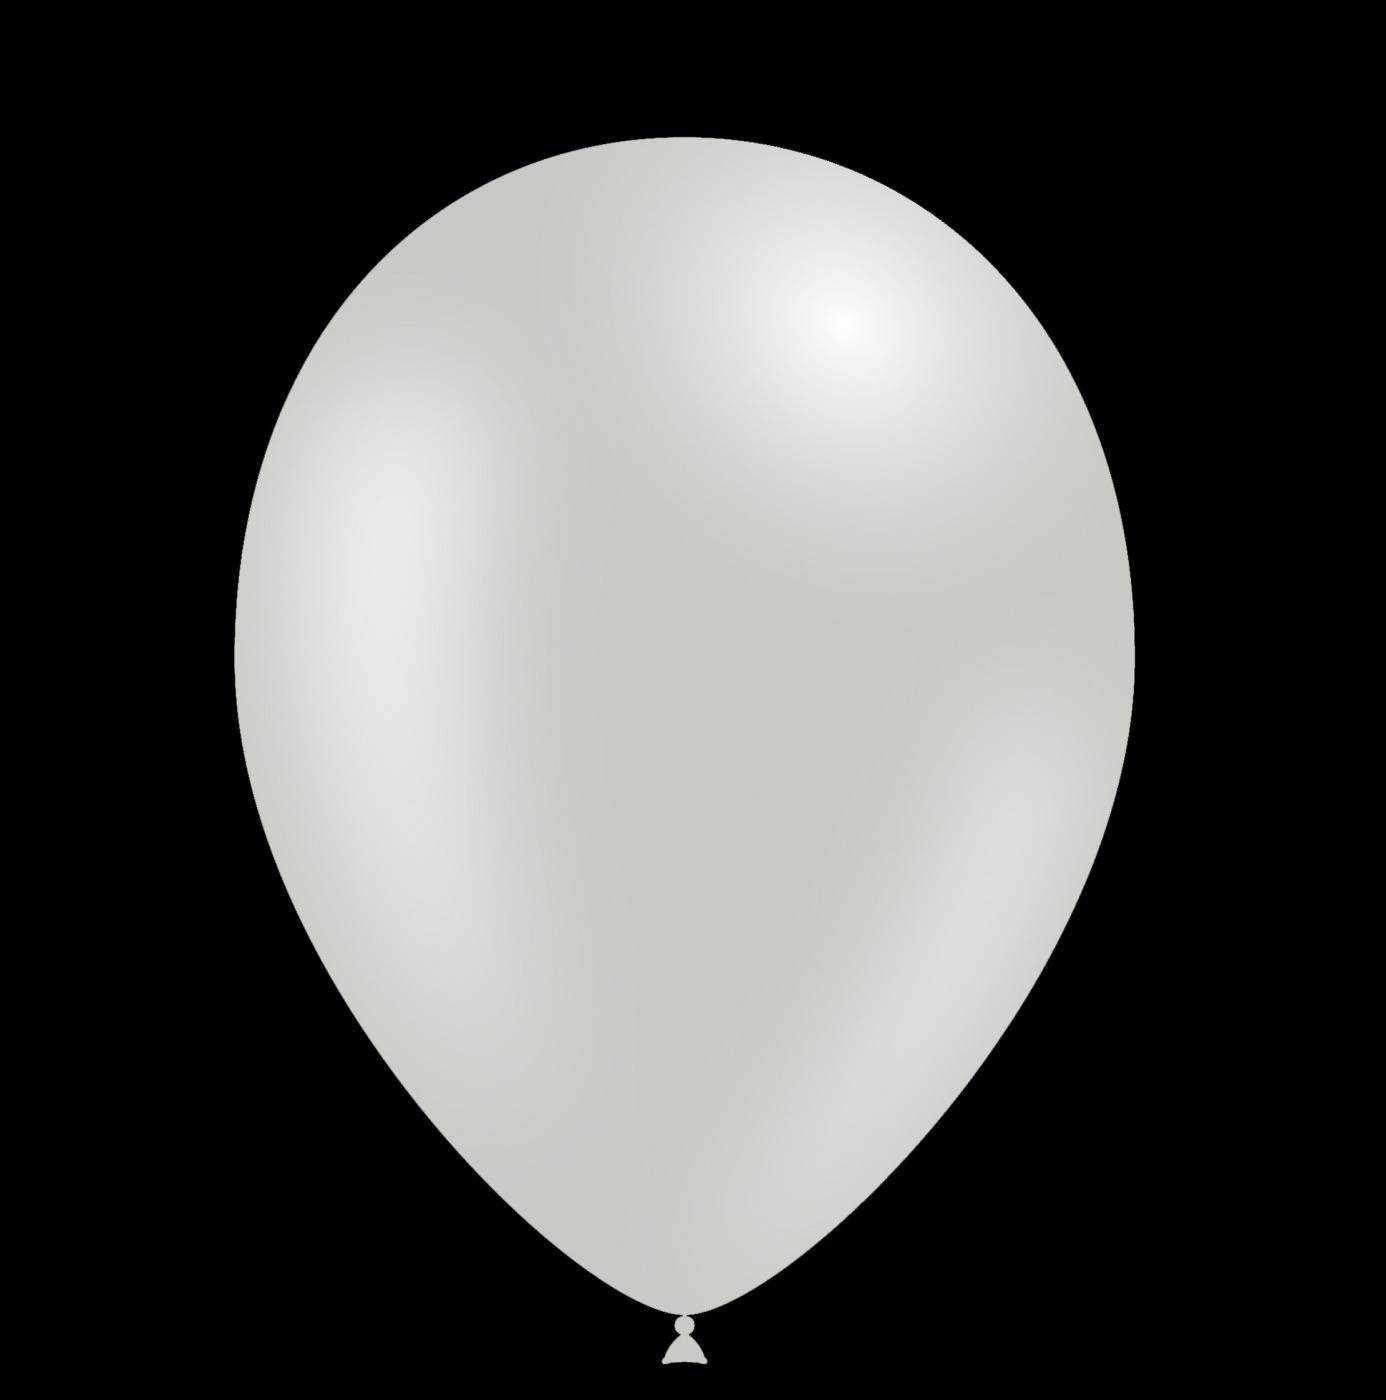 Zilver gekleurde helium ballonnen kopen